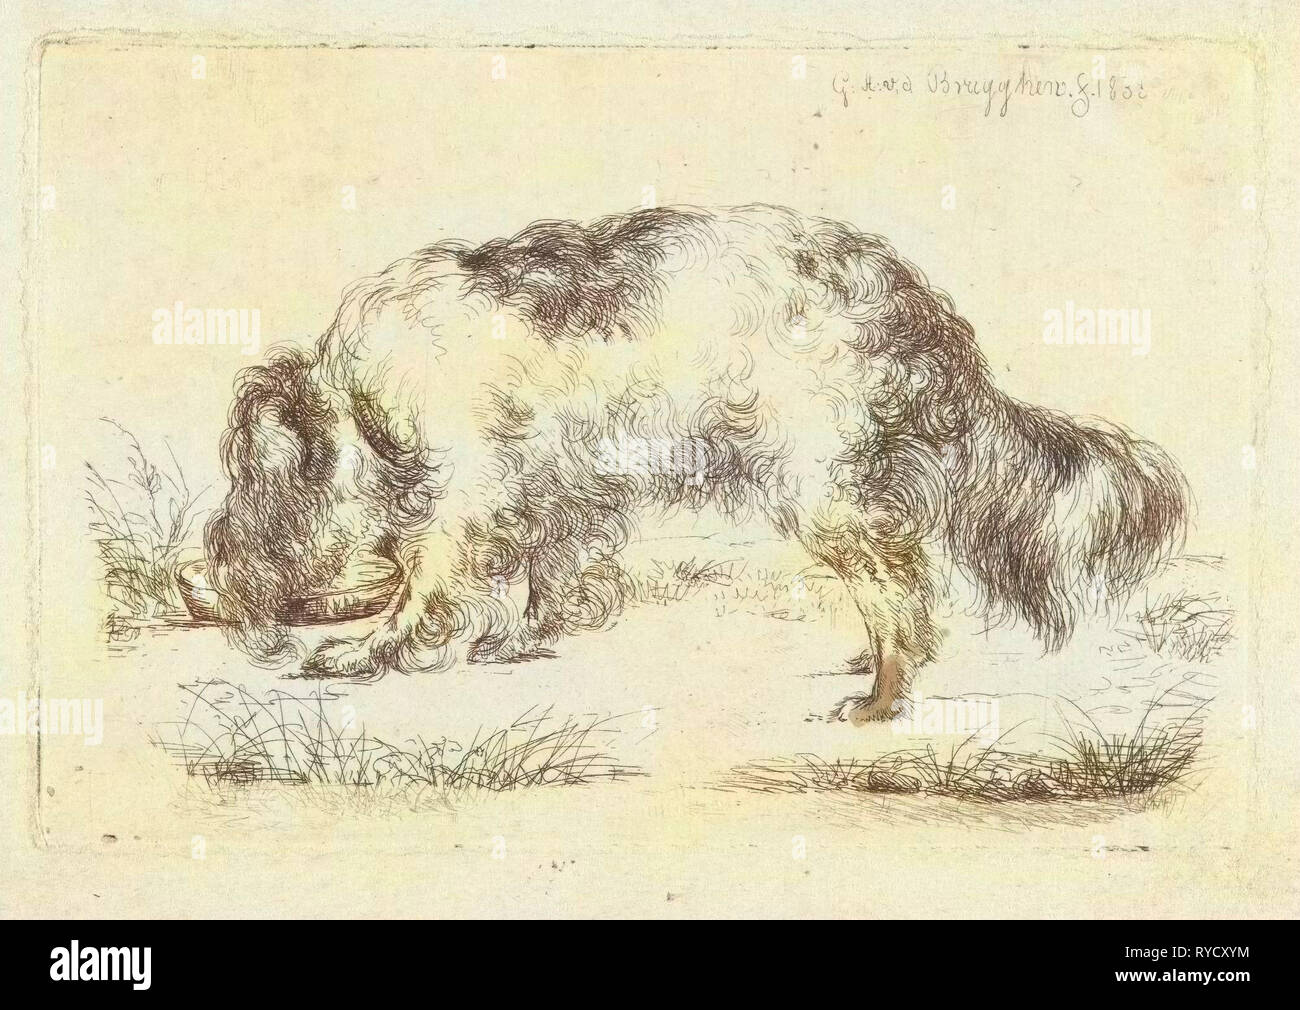 Drinking dog, Guillaume Anne van der Brugghen, 1832 Stock Photo